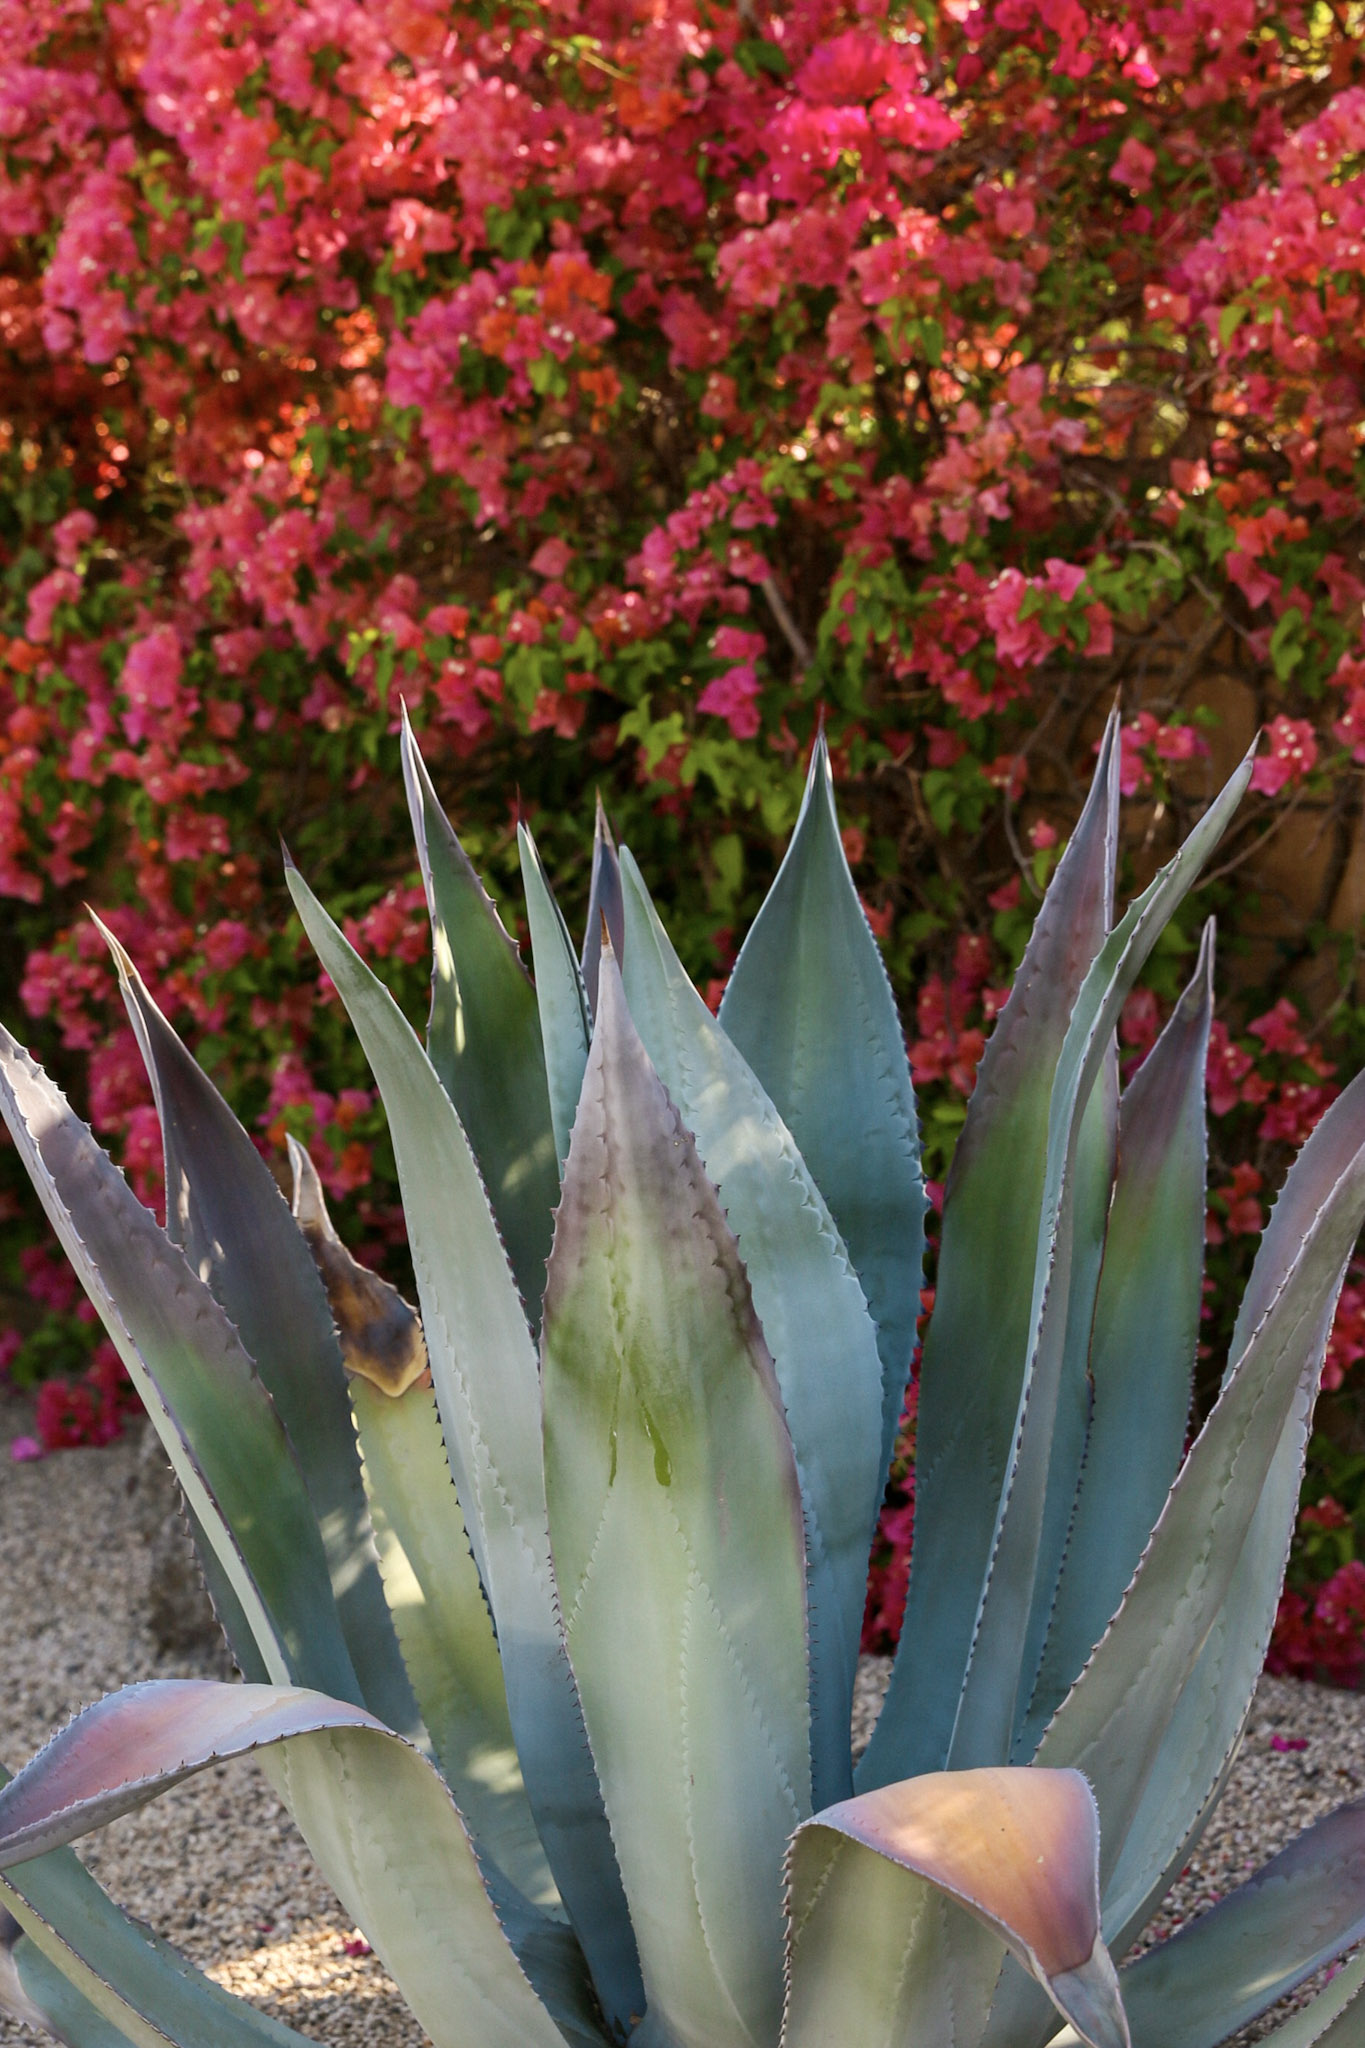 Cactus-flower